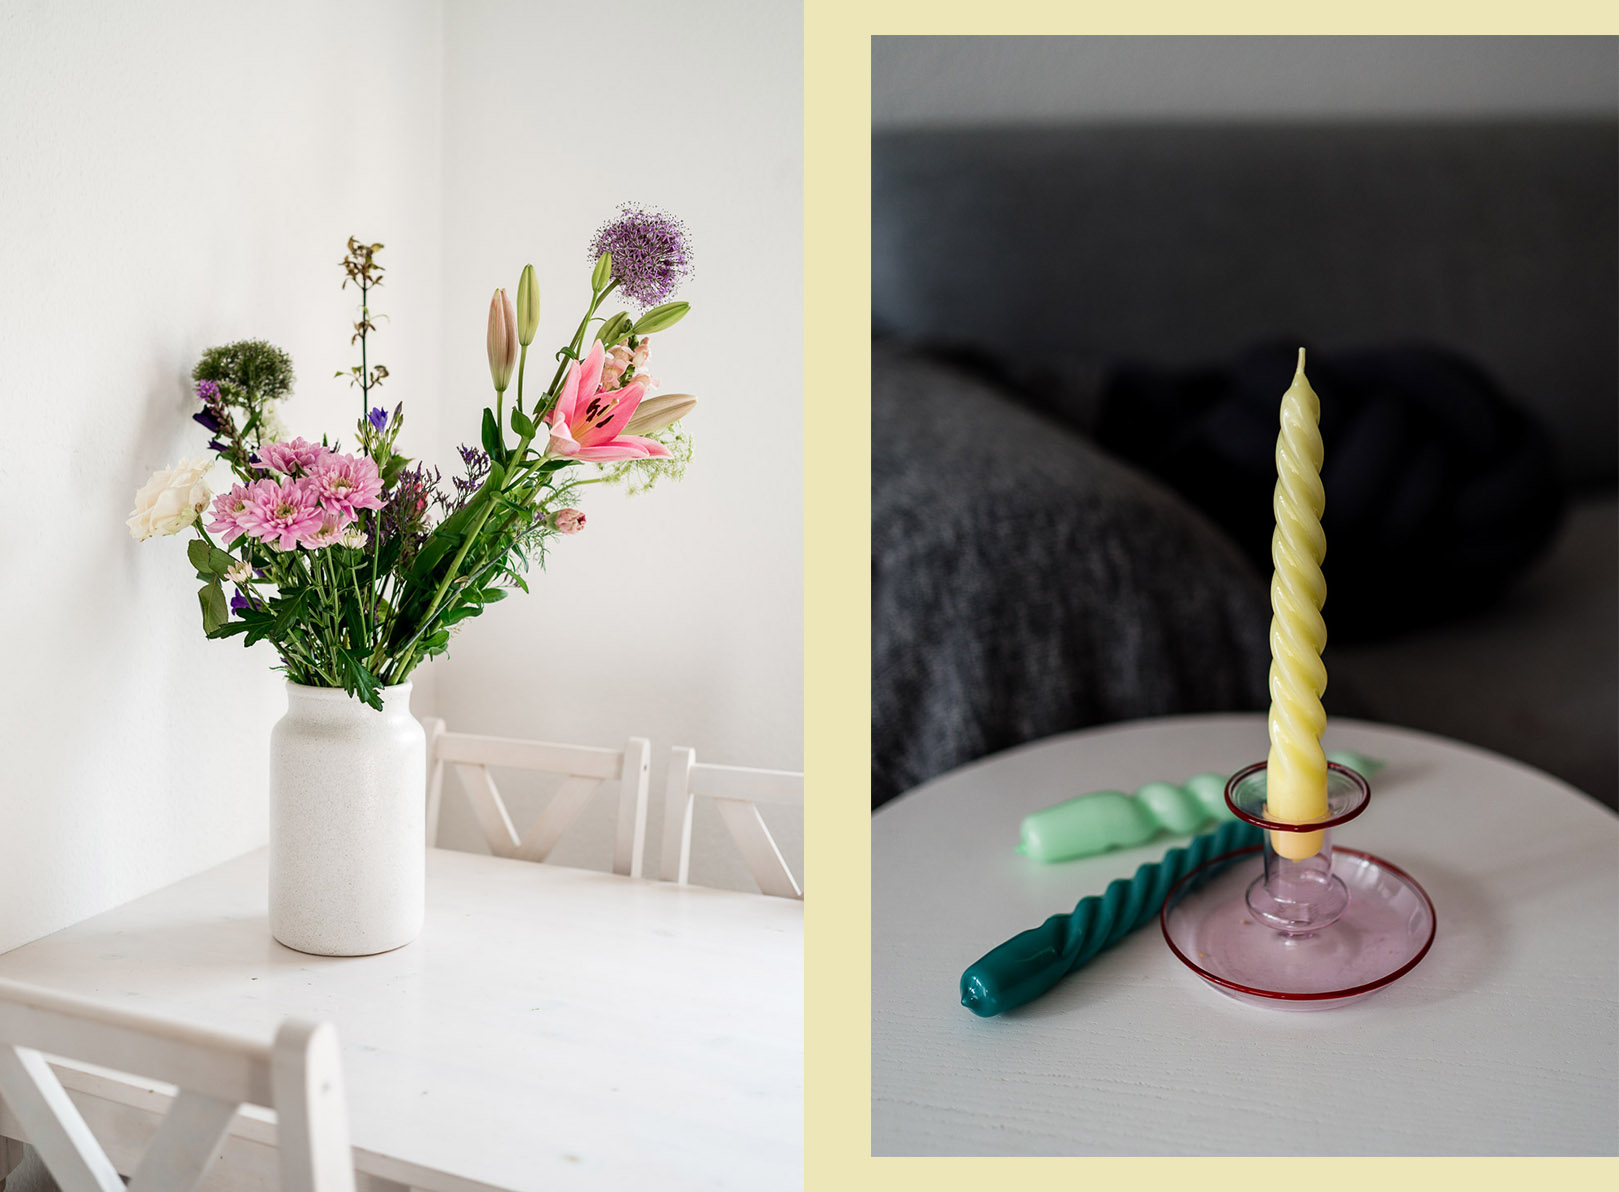 Gemütliche Deko Ideen mit Kerzen und Blumen